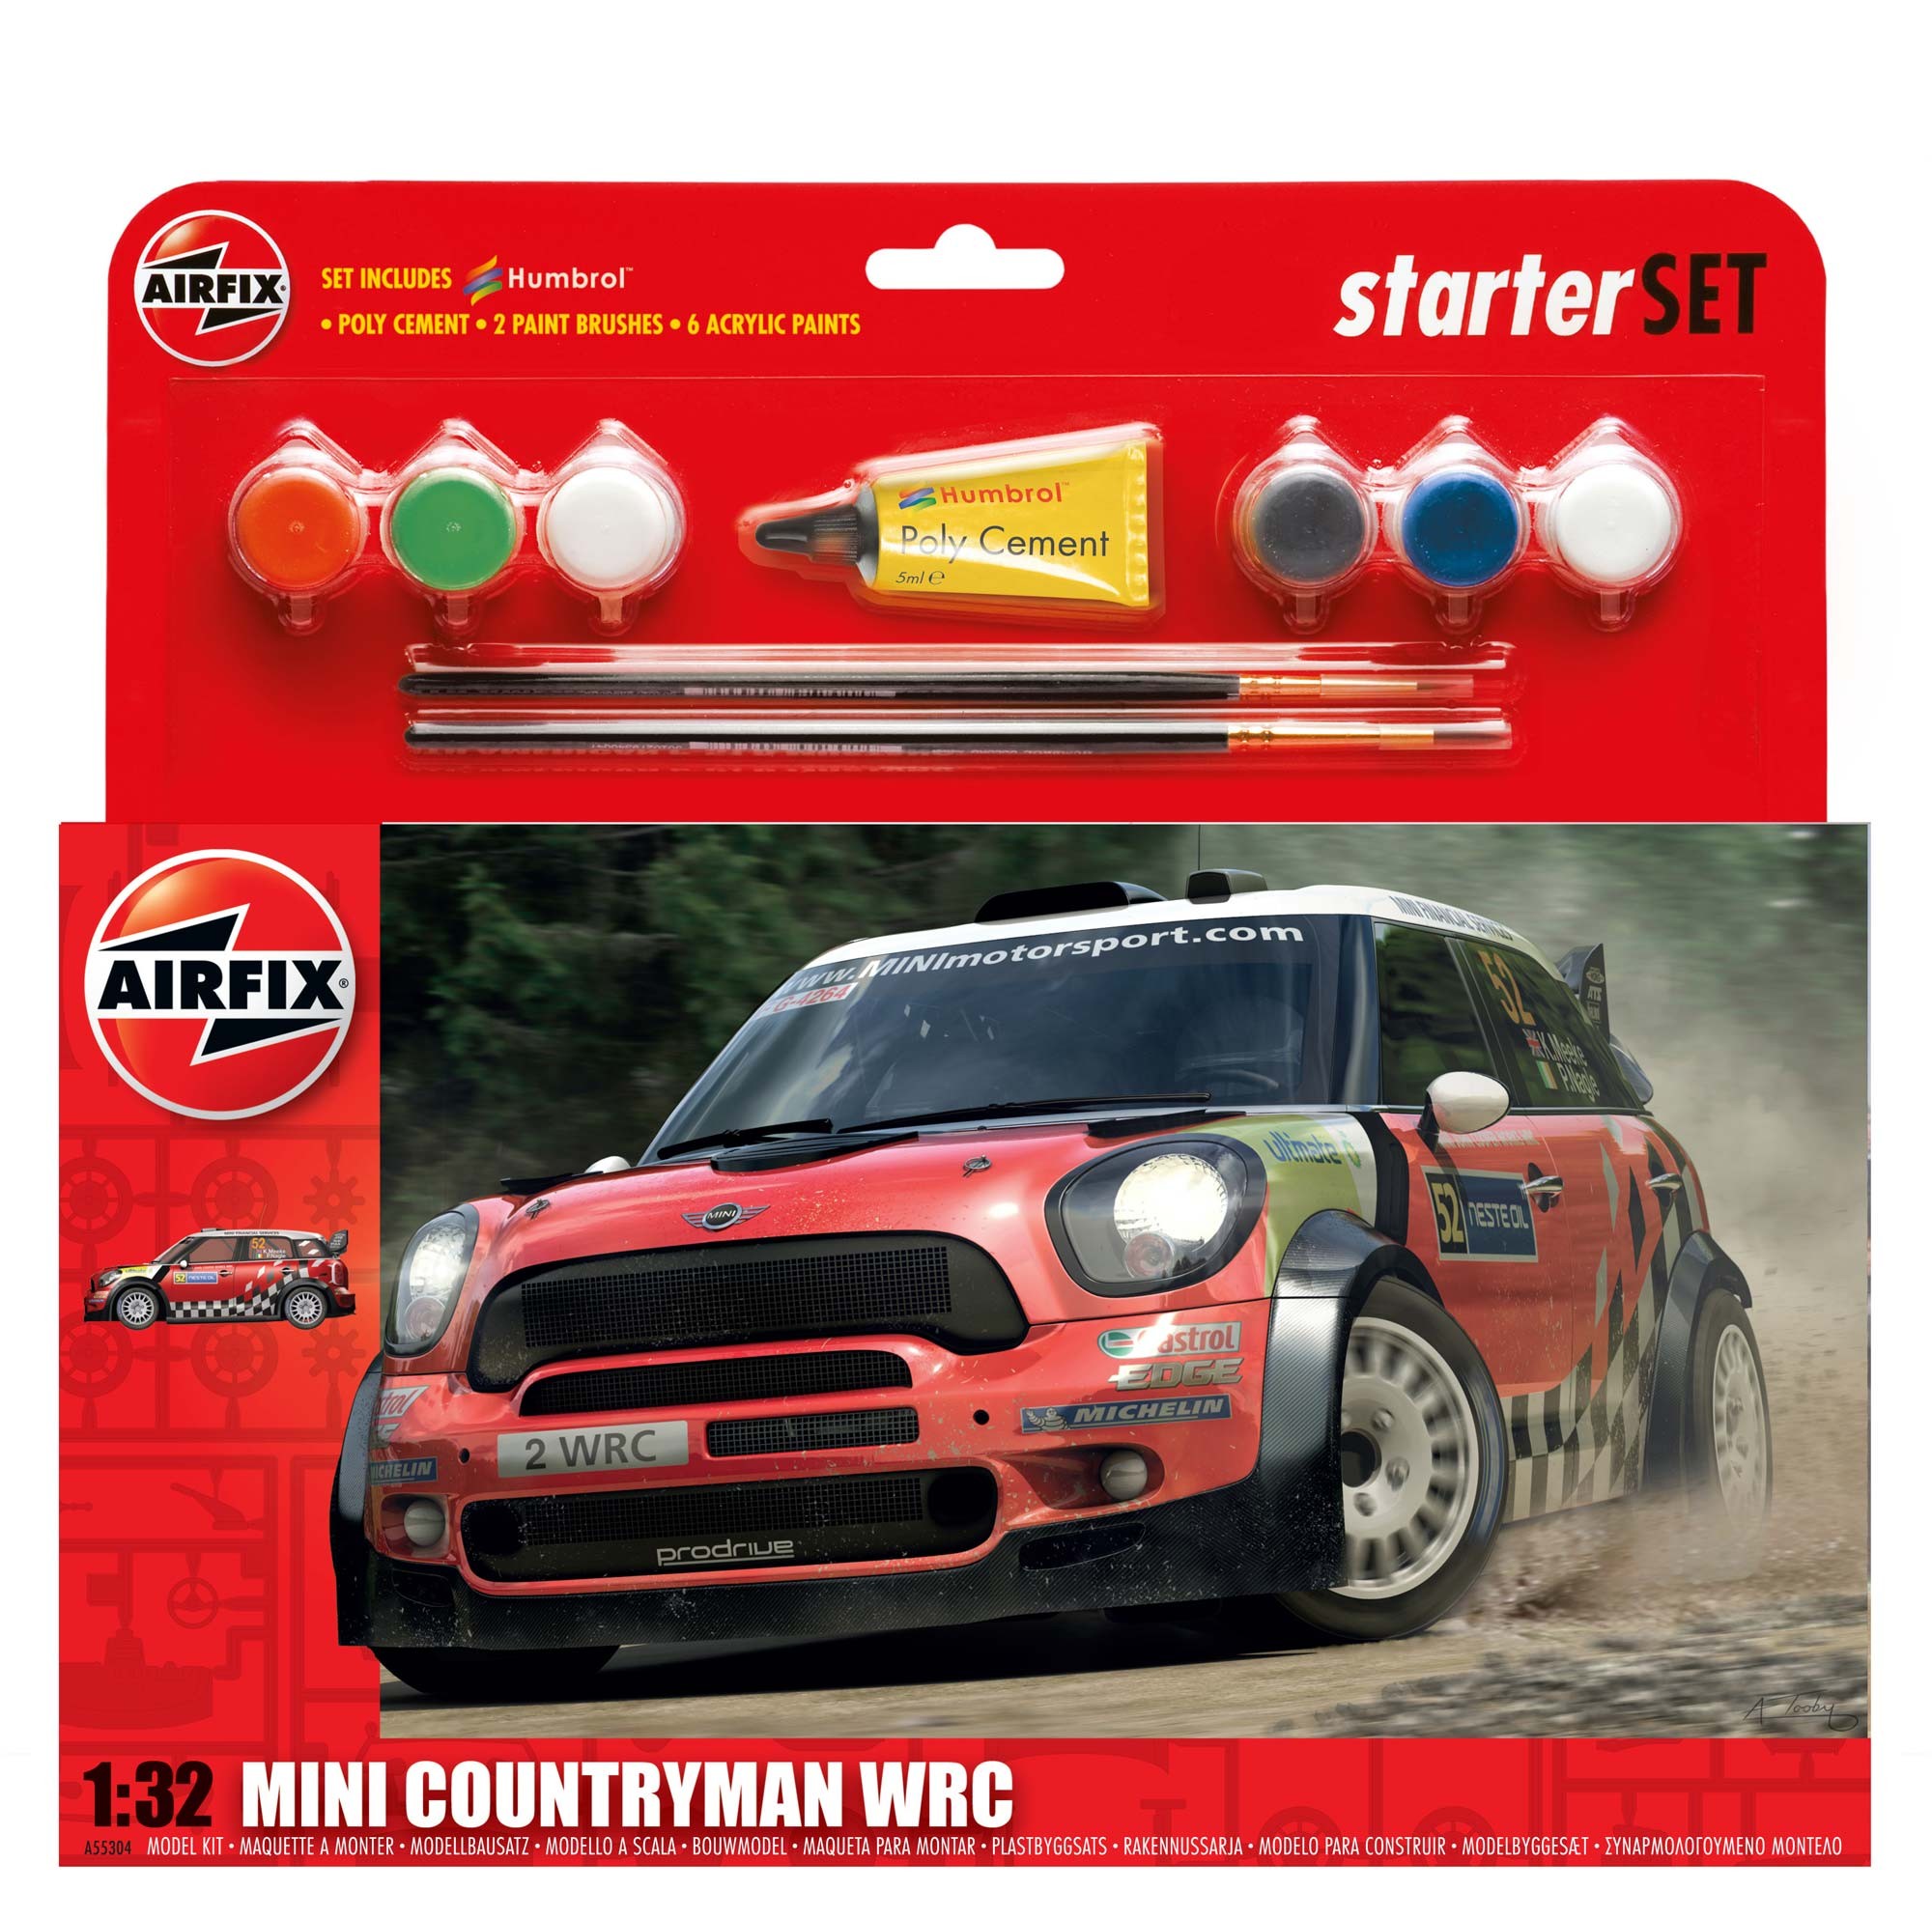 Airfix Mini Countryman WRC Starter Set in 1:32 bouwpakket met lijm en verf